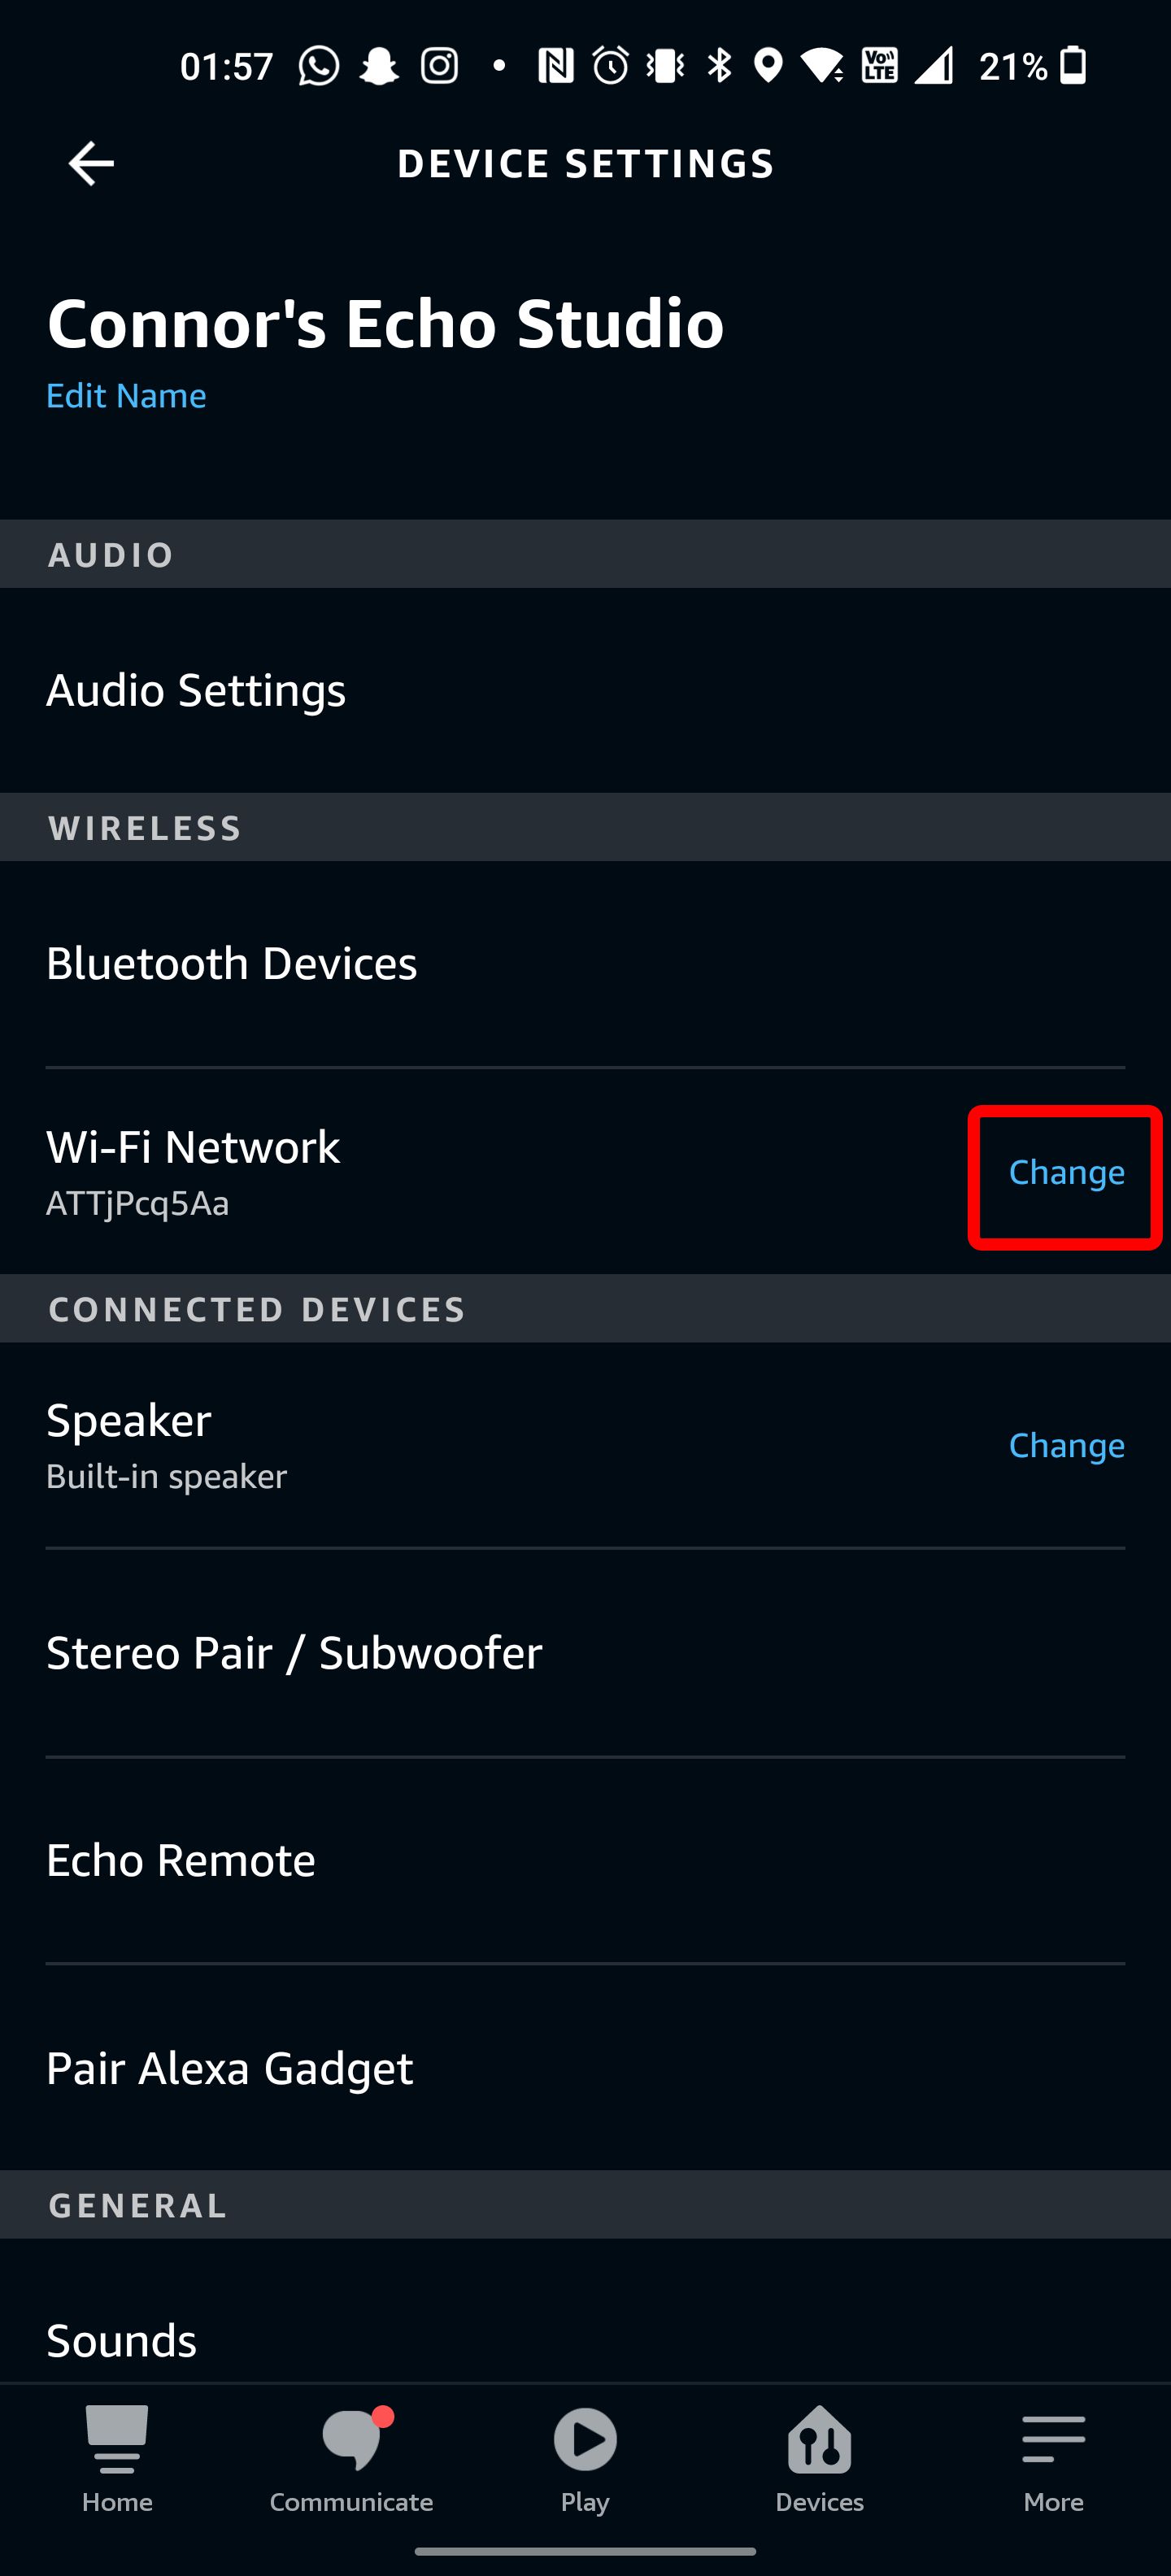 The Alexa app wifi settings menu.